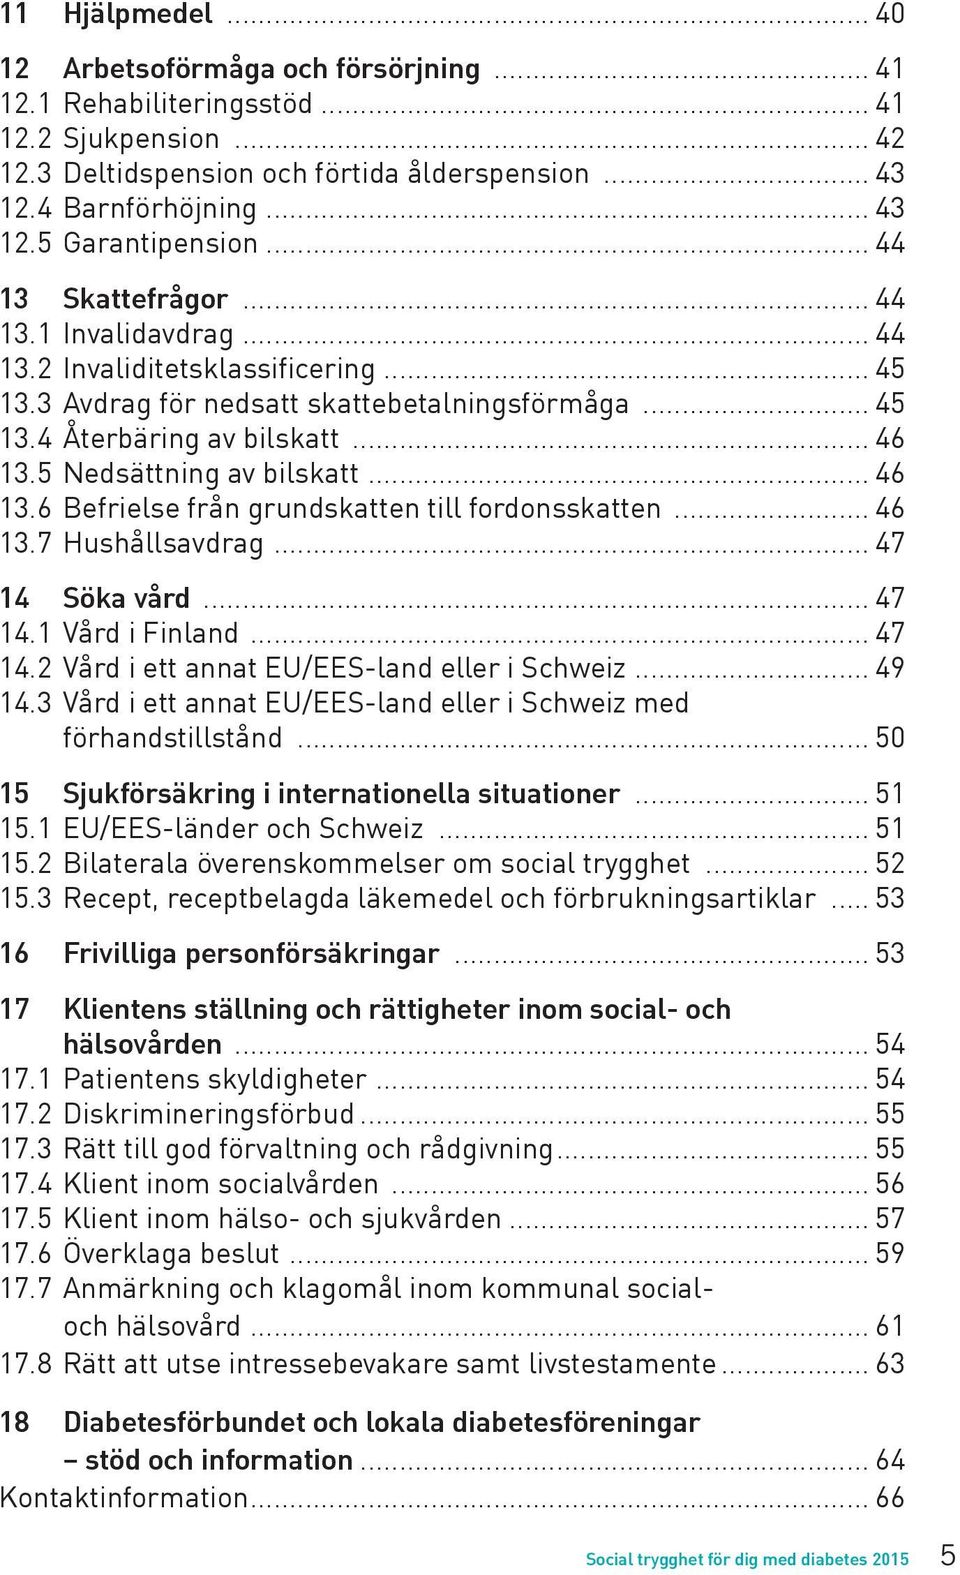 5 Nedsättning av bilskatt... 46 13.6 Befrielse från grundskatten till fordonsskatten... 46 13.7 Hushållsavdrag... 47 14 Söka vård... 47 14.1 Vård i Finland... 47 14.2 Vård i ett annat EU/EES-land eller i Schweiz.